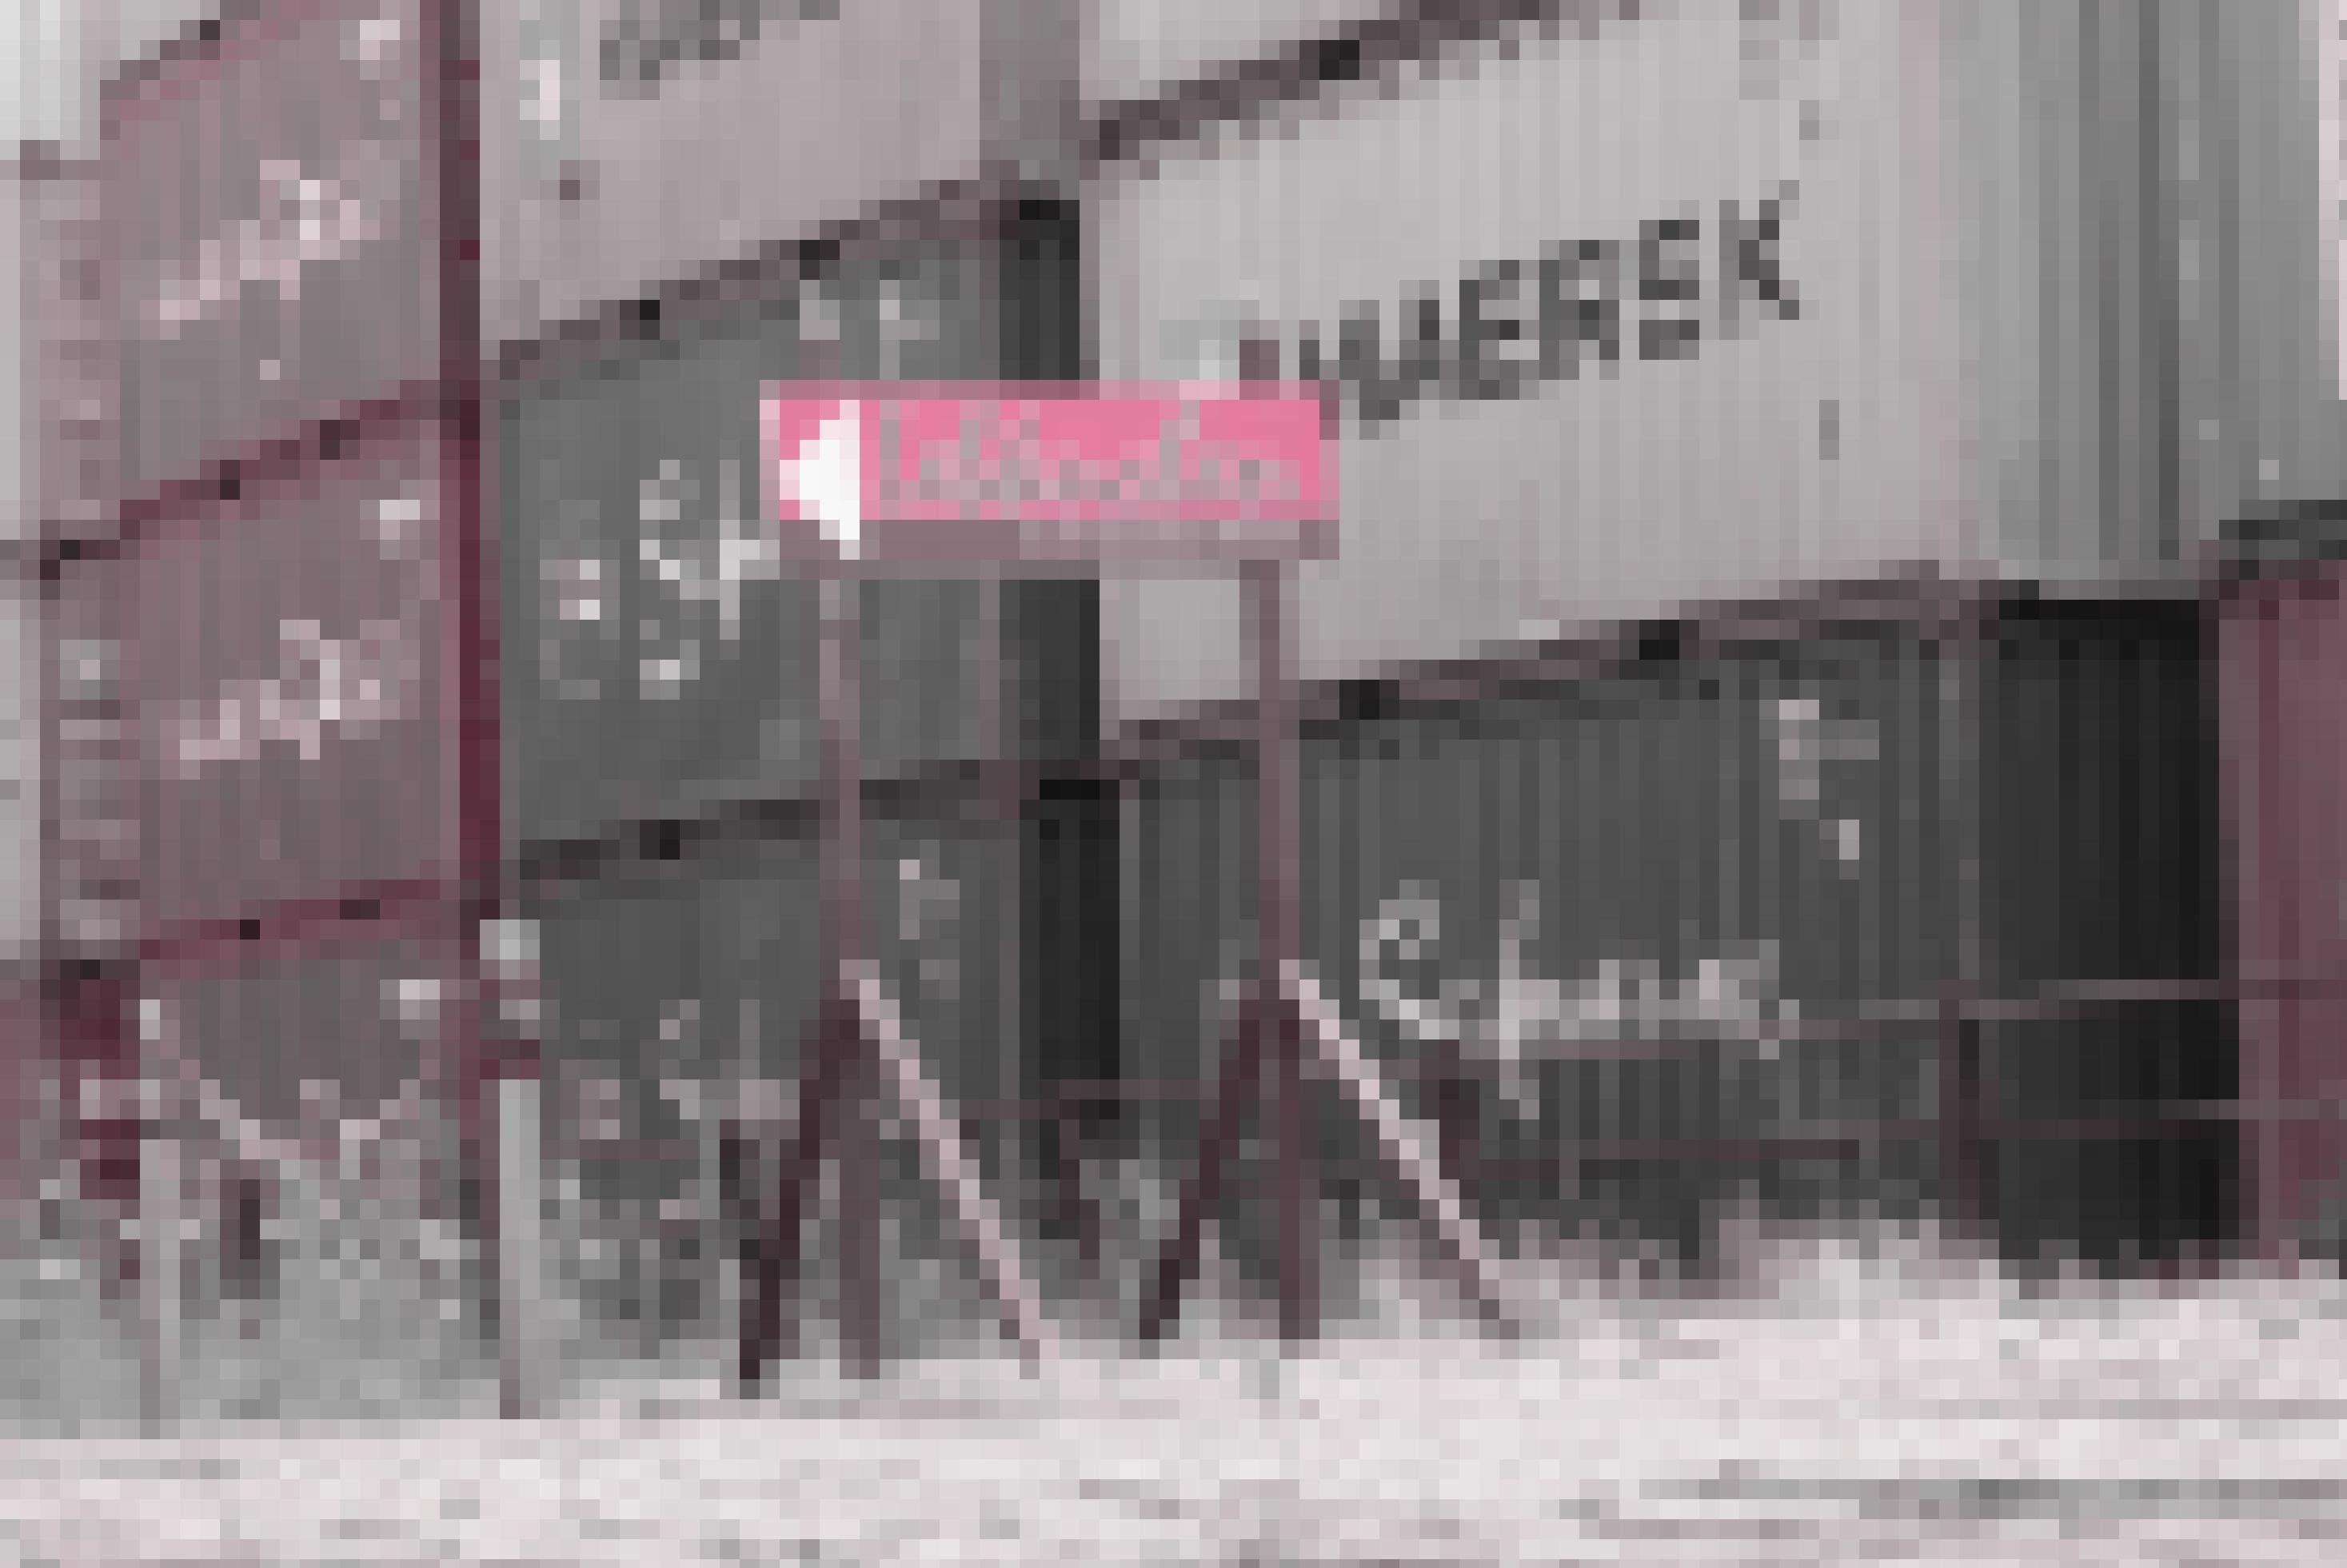 Hinweisschild einer Bremer Lebkuchen-Manufaktur vor dem Hintergrund gestapelter Schiffscontainer.